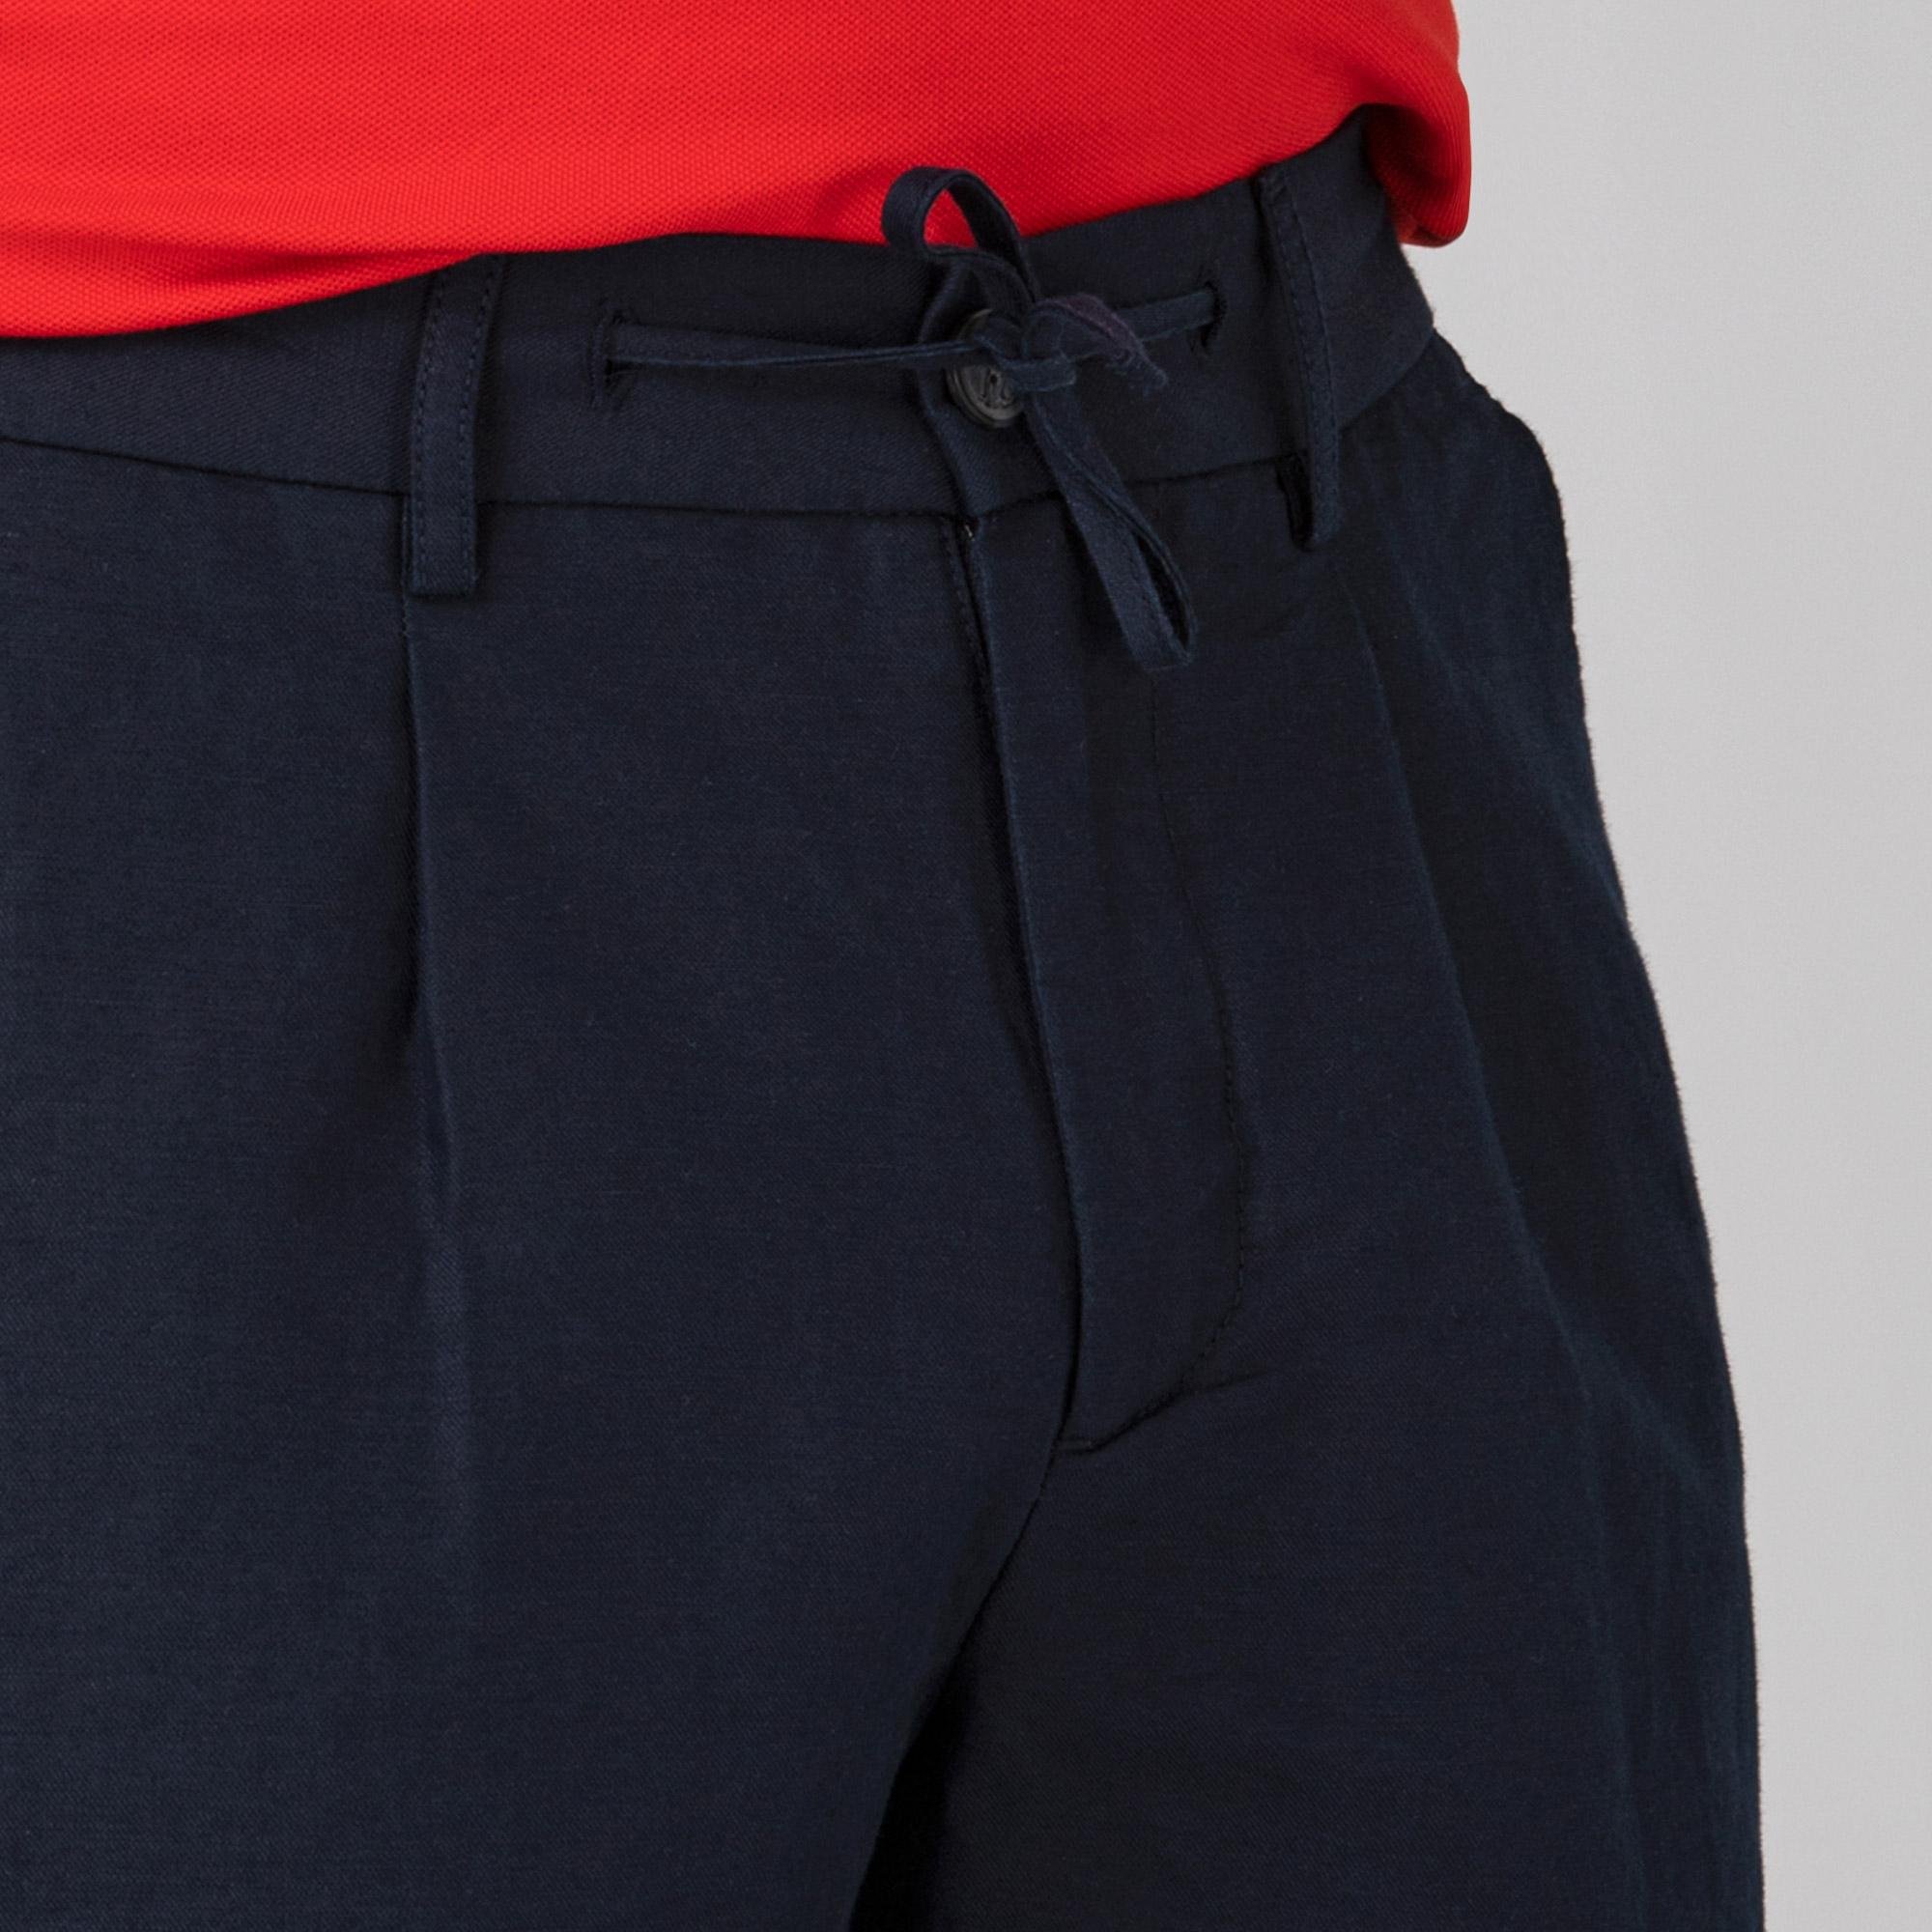 Lacoste Men's shorts